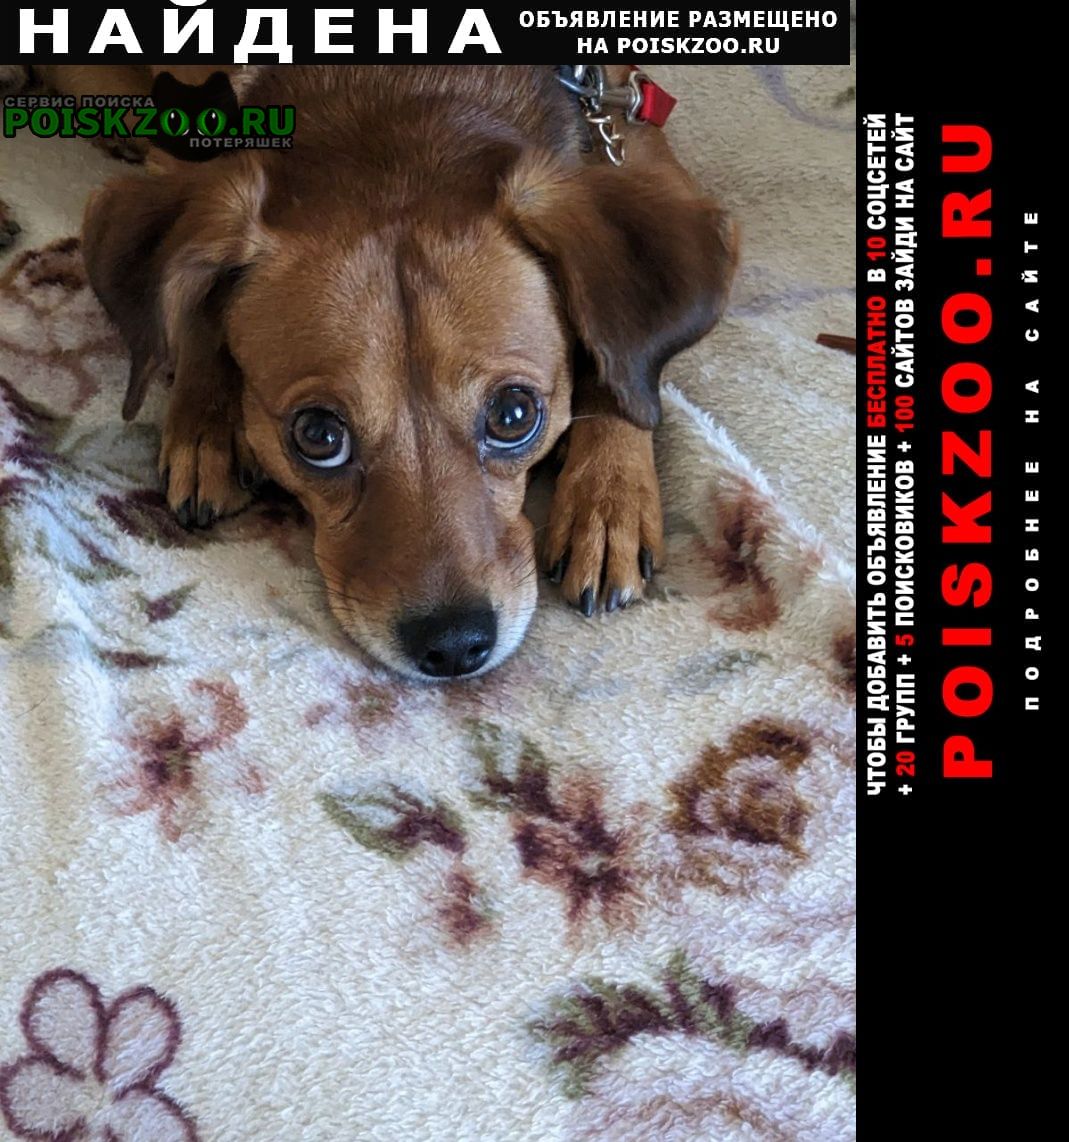 Найдена собака кобель рыжий мальчик на стройных крепких ножках Ростов-на-Дону